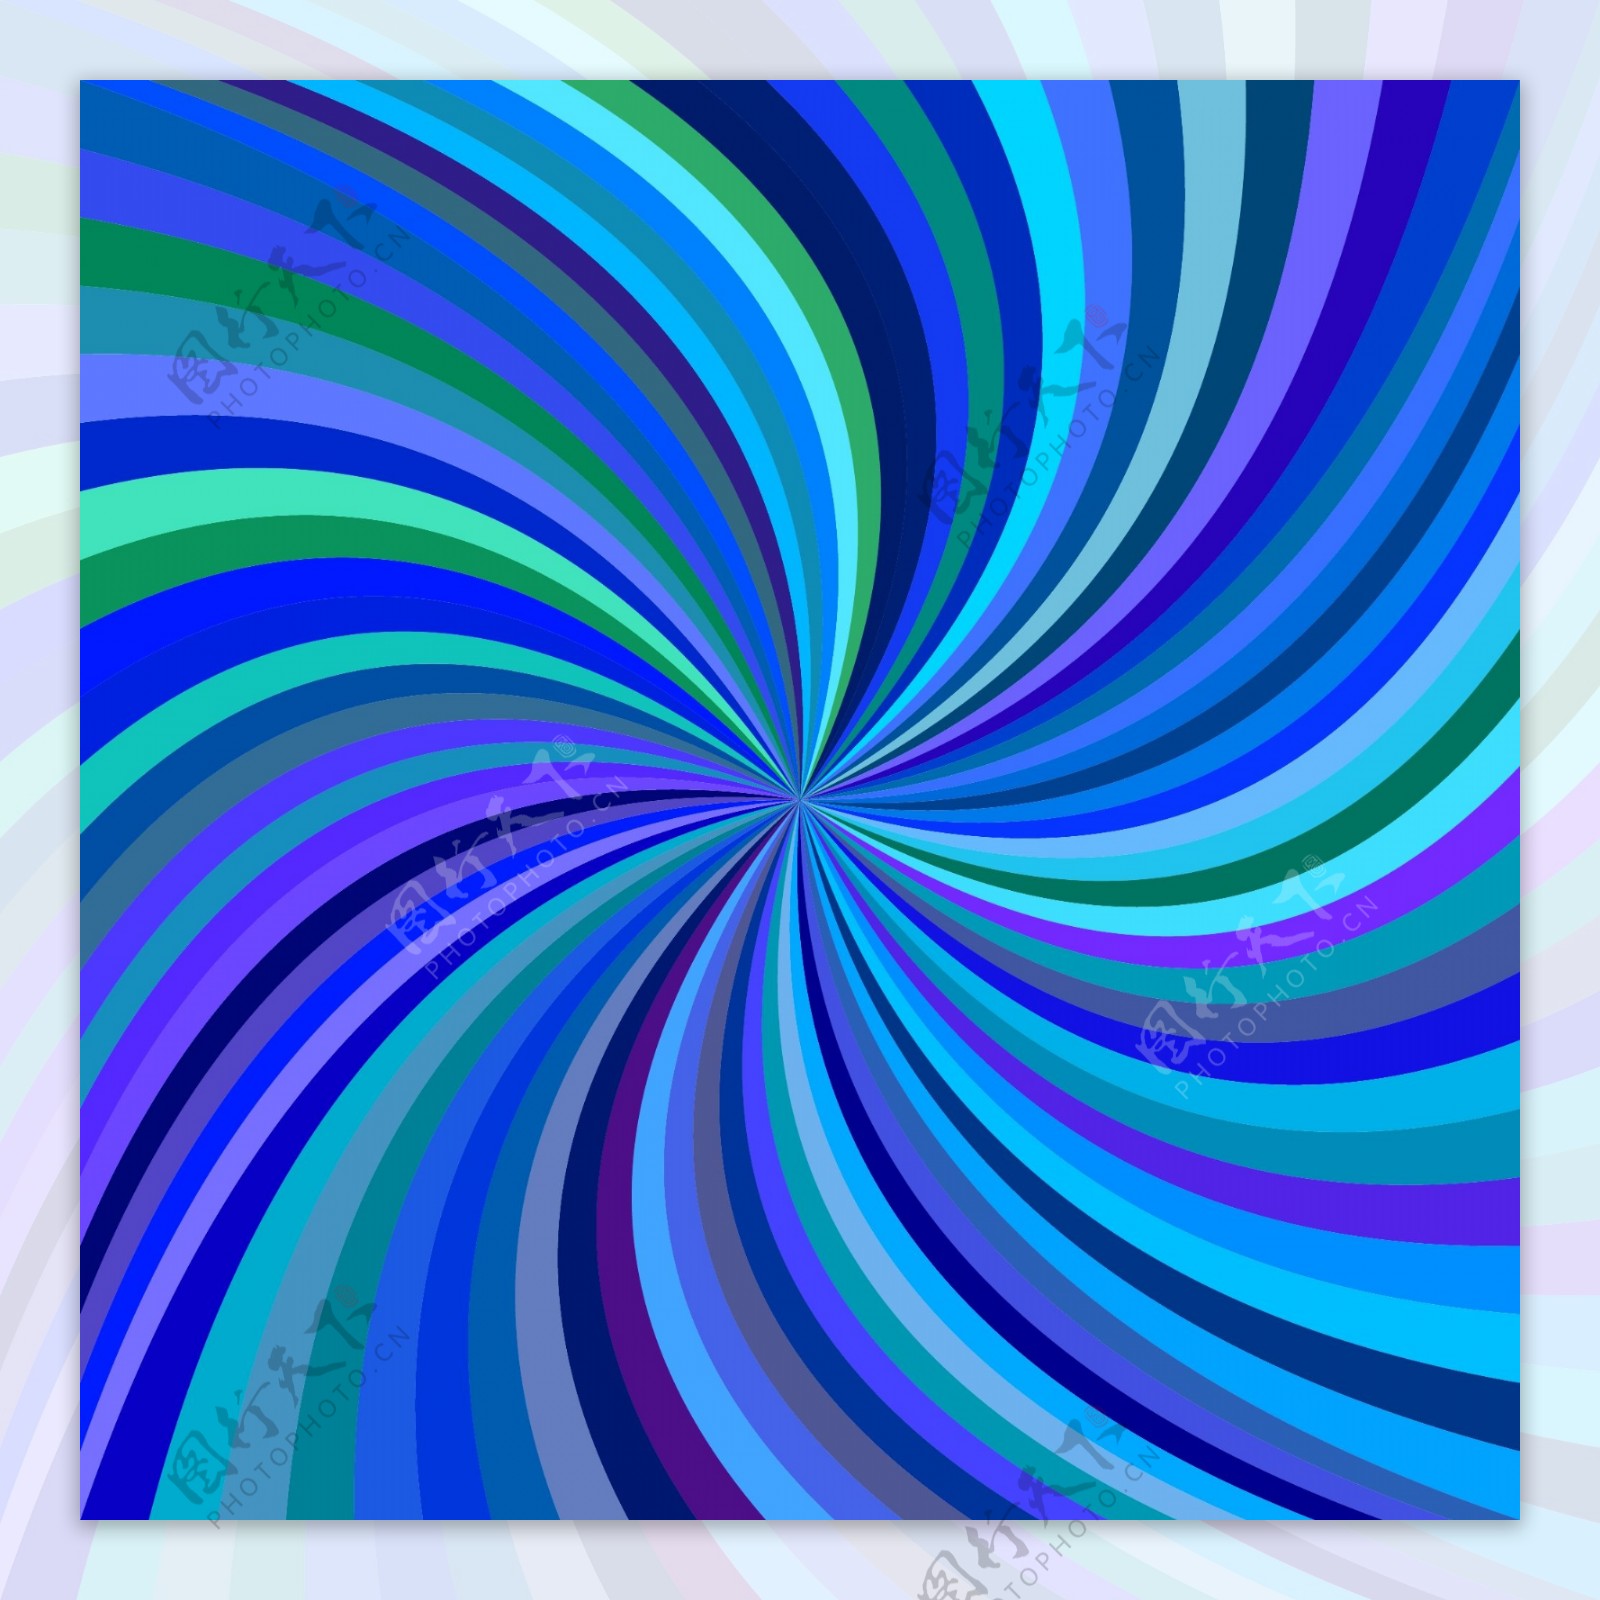 抽象蓝色螺旋背景